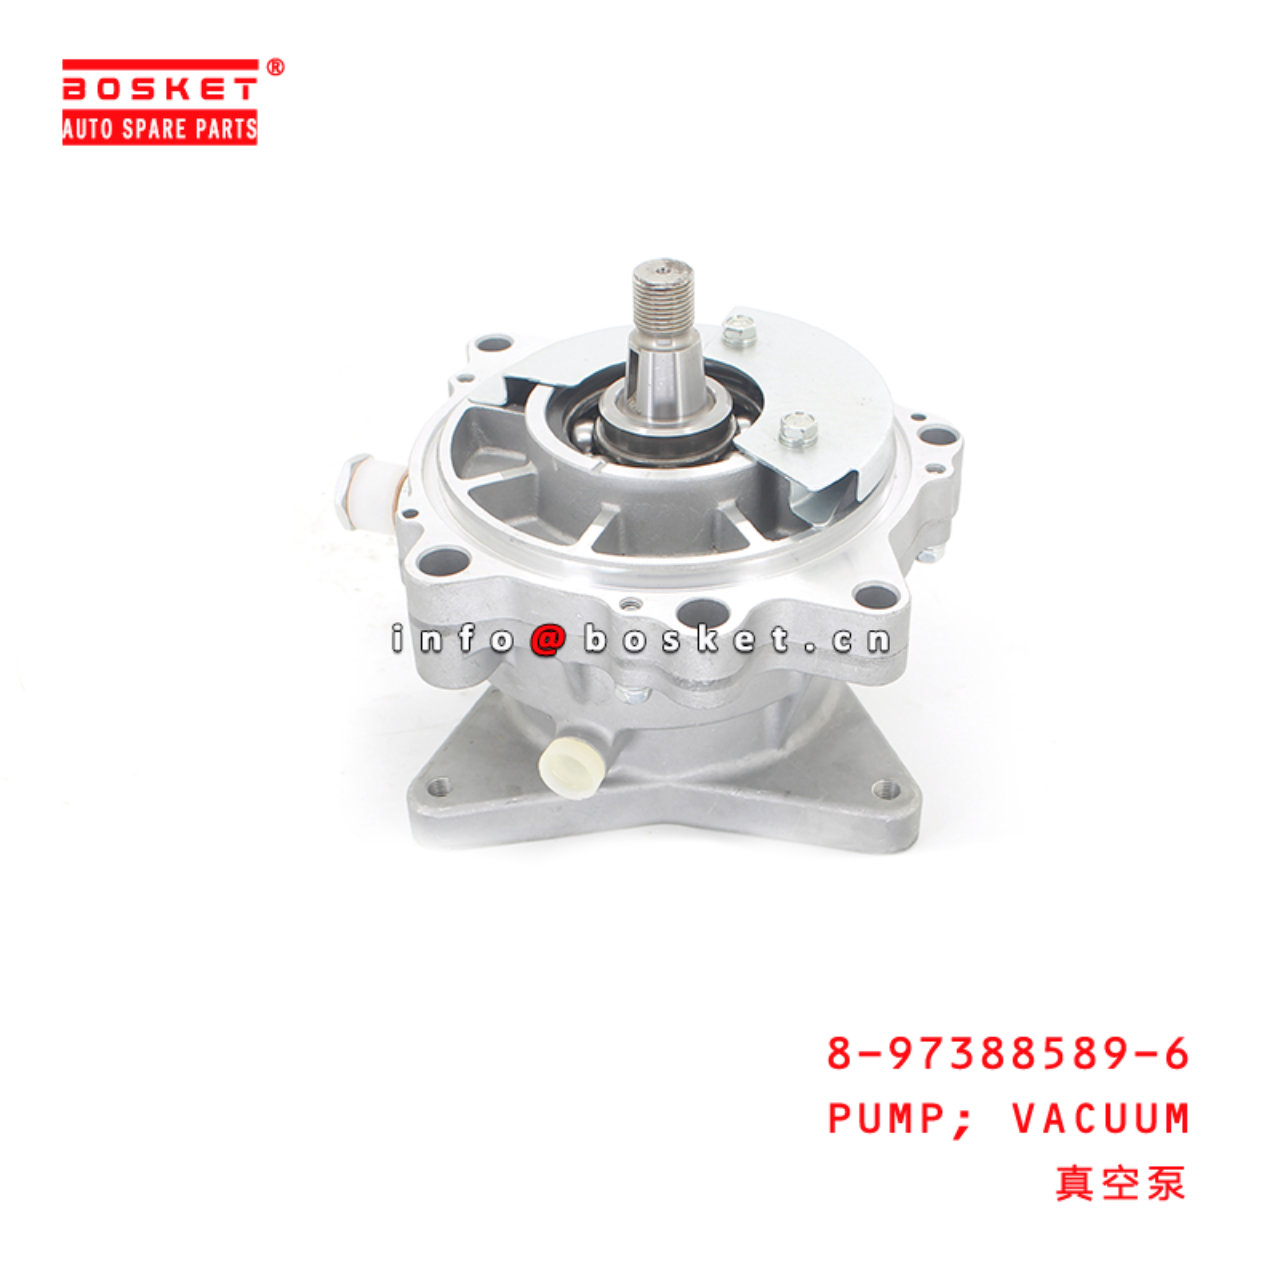 8-97388589-6 Dcm Sply Def Pump Assembly Suitable for ISUZU 700P 4HK1 8973885896